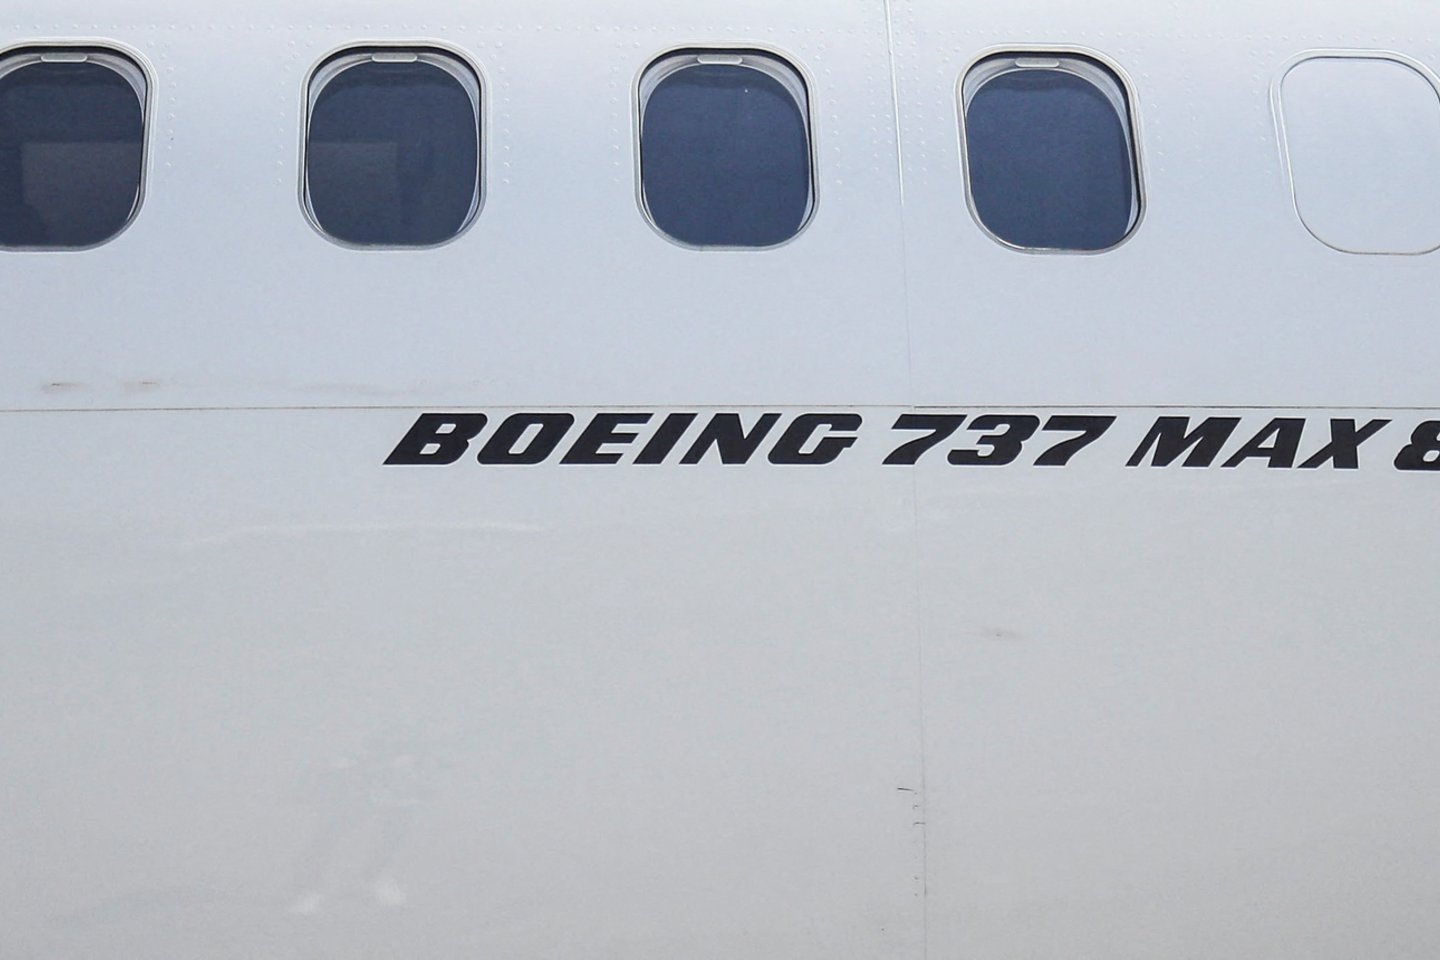  Boeing 737 MAX<br> Reuters/Scanpix nuotr.